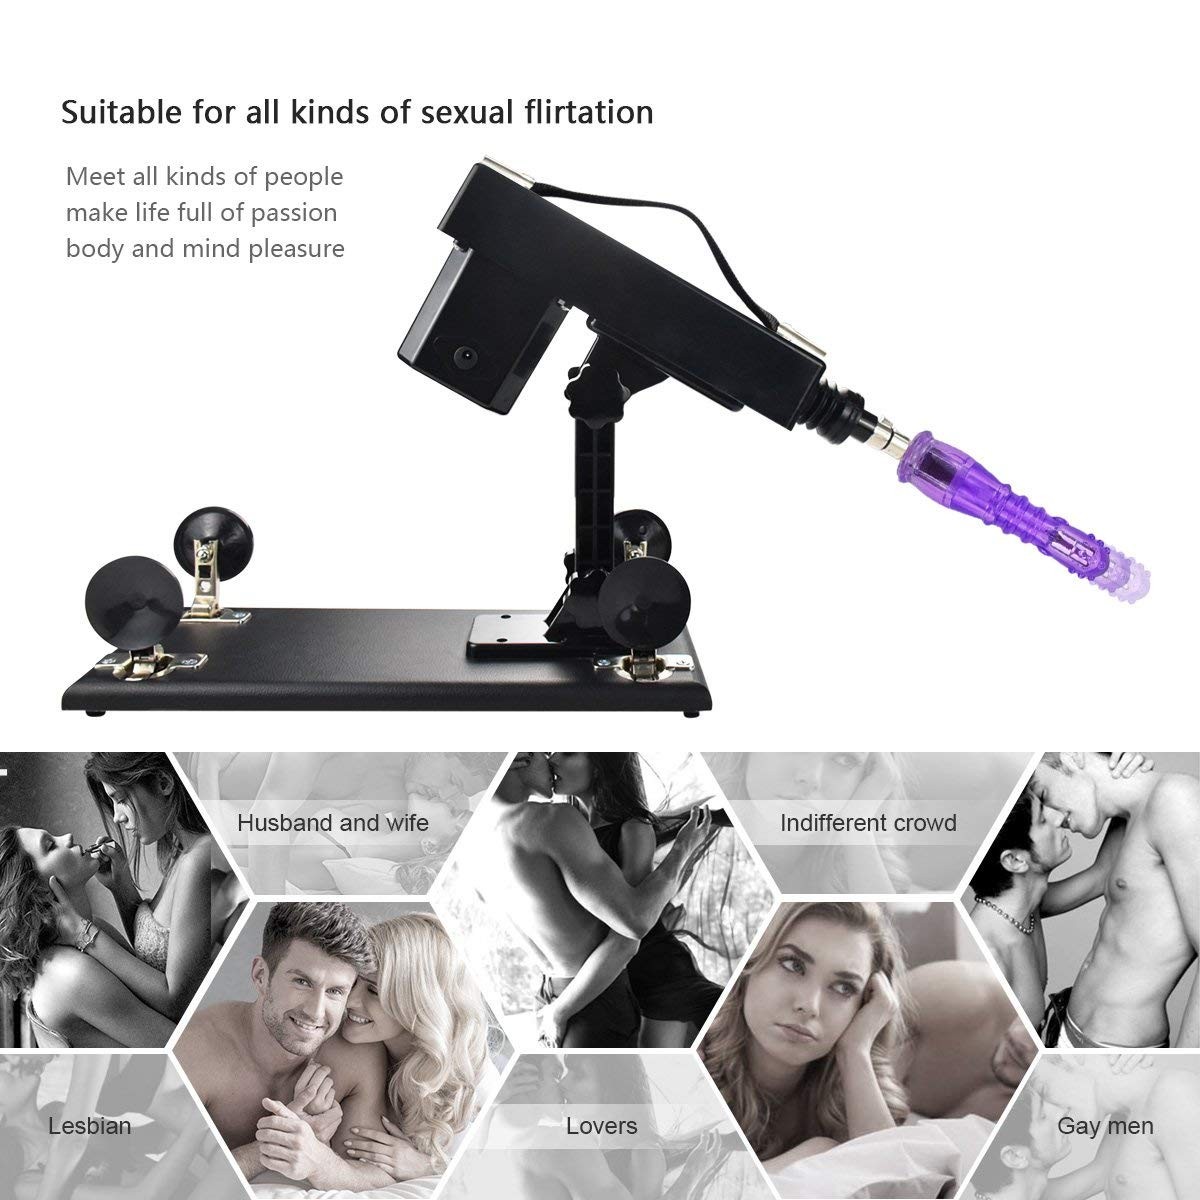 Female Masturbation Sex Machine Gun with Many Dildo Accessories picture picture